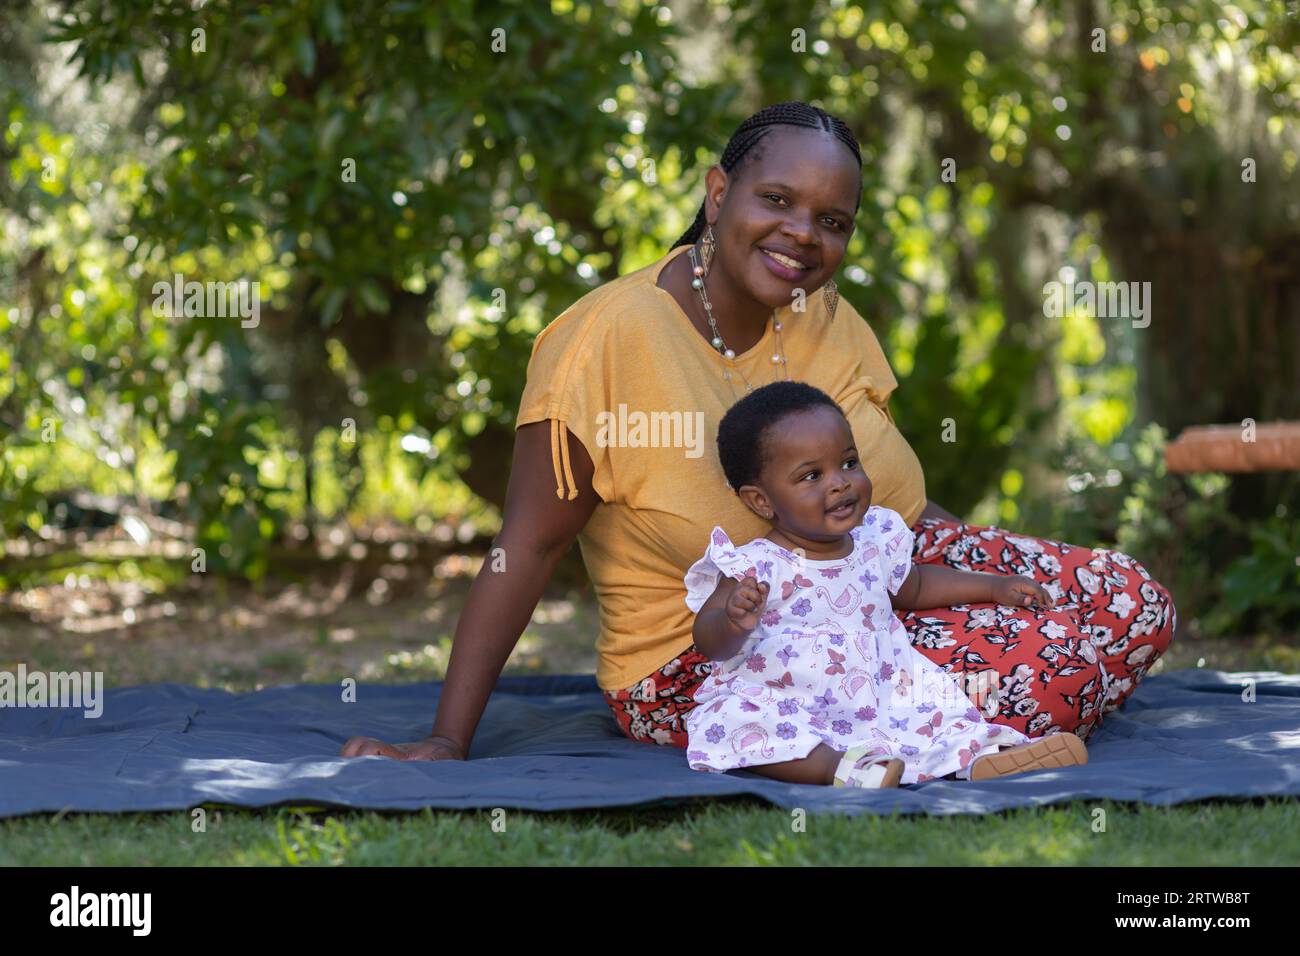 Porträt einer jungen schwarzen Frau, die auf einer Picknickdecke unter Bäumen mit ihrer kleinen Tochter sitzt Stockfoto